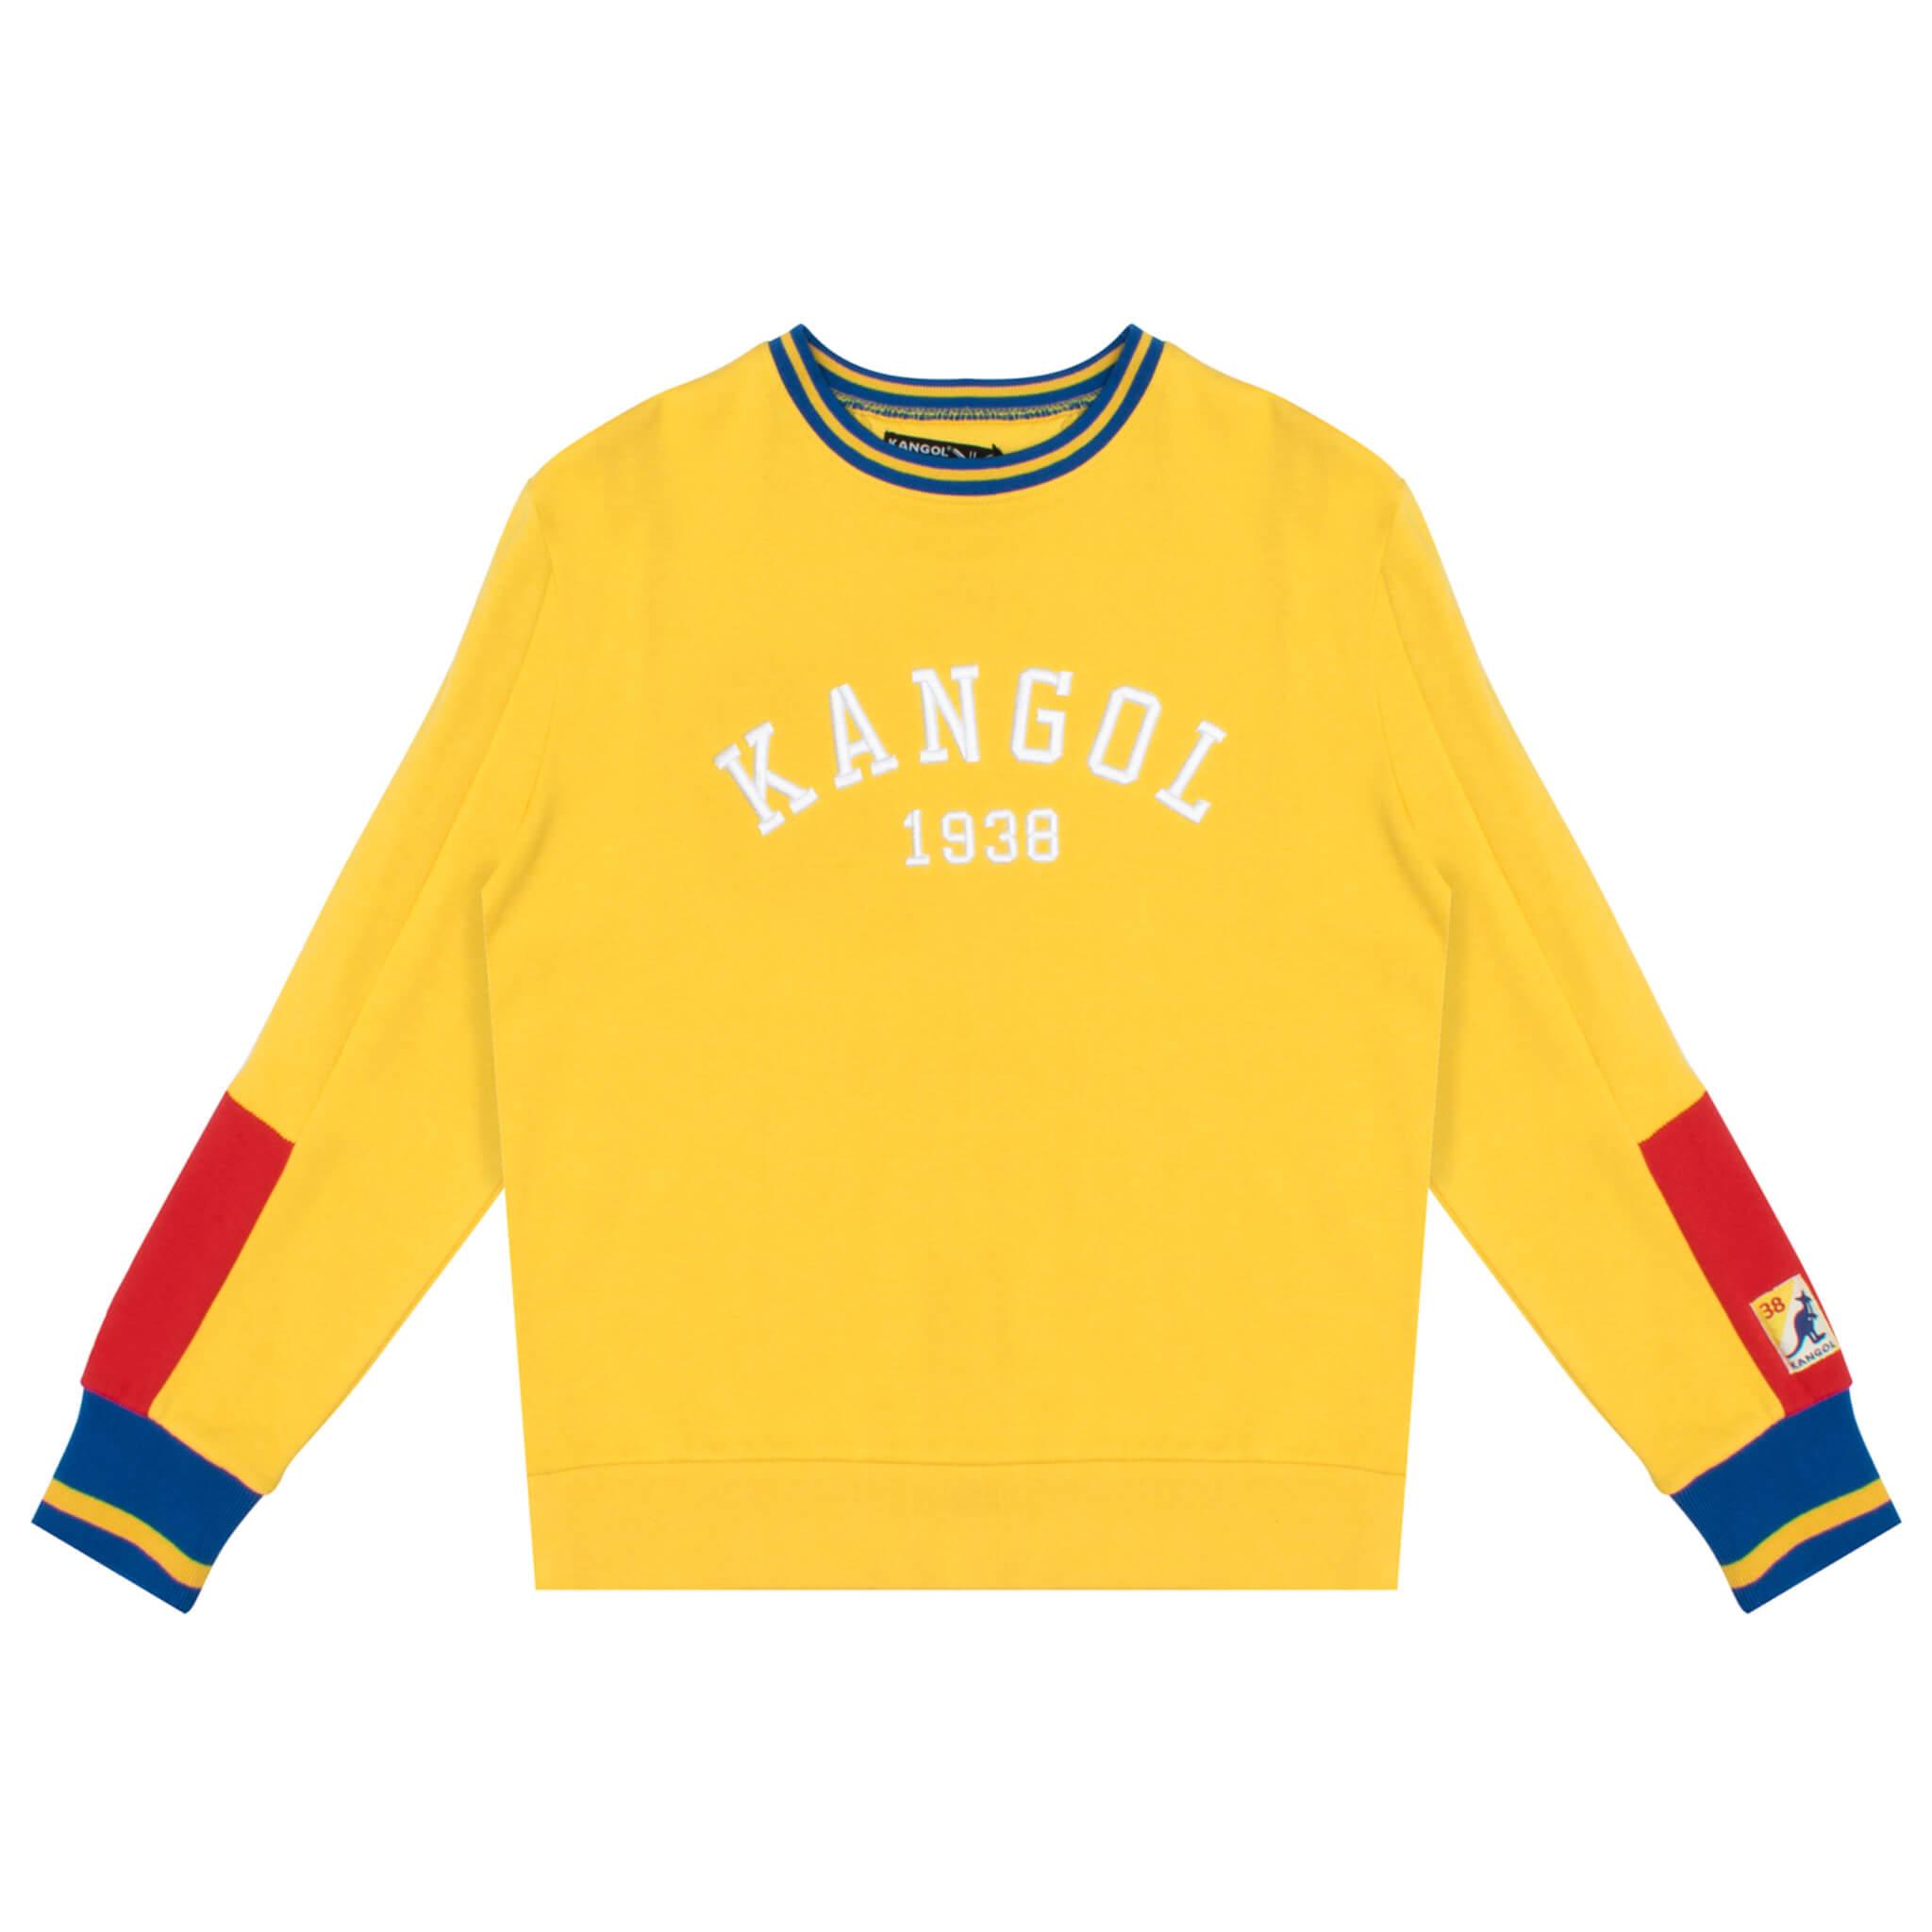 Kangol Retro Popover - Fashion Hub Club